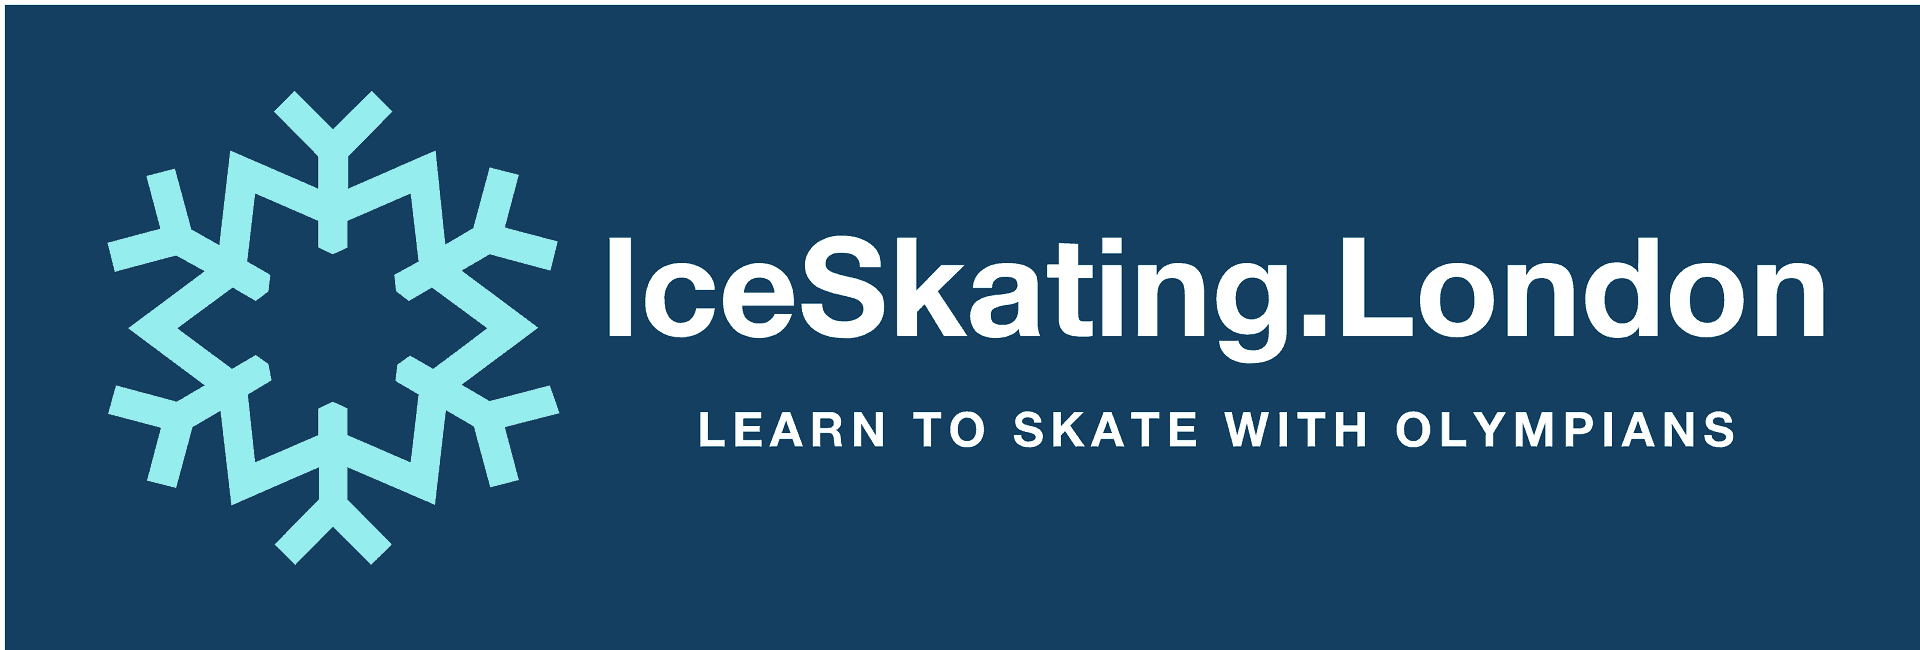 IceSkating.London in UK